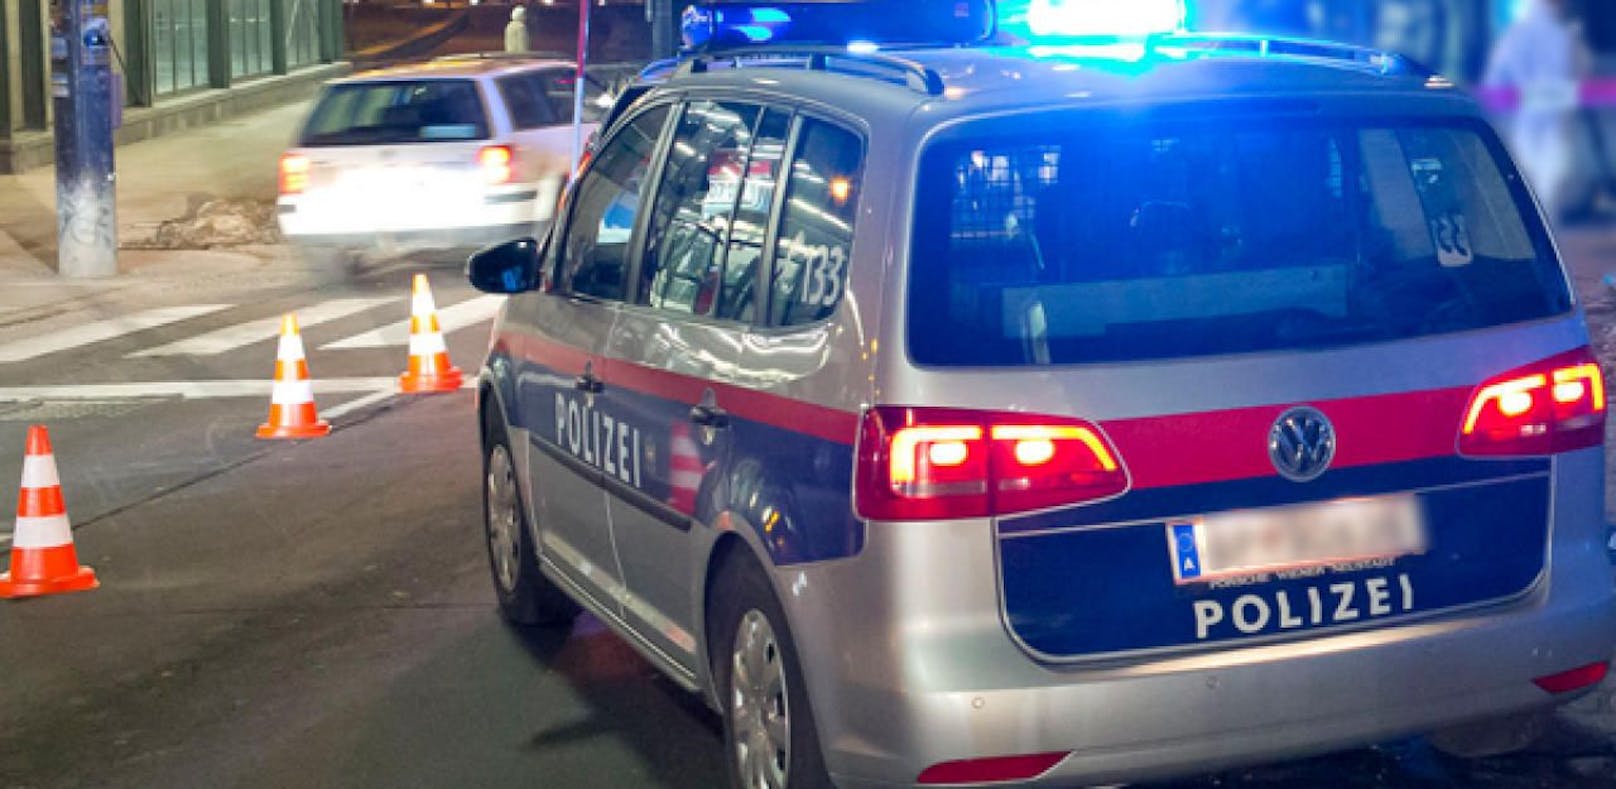 Auto rast auf Polizist zu – dann fallen mehrere Schüsse